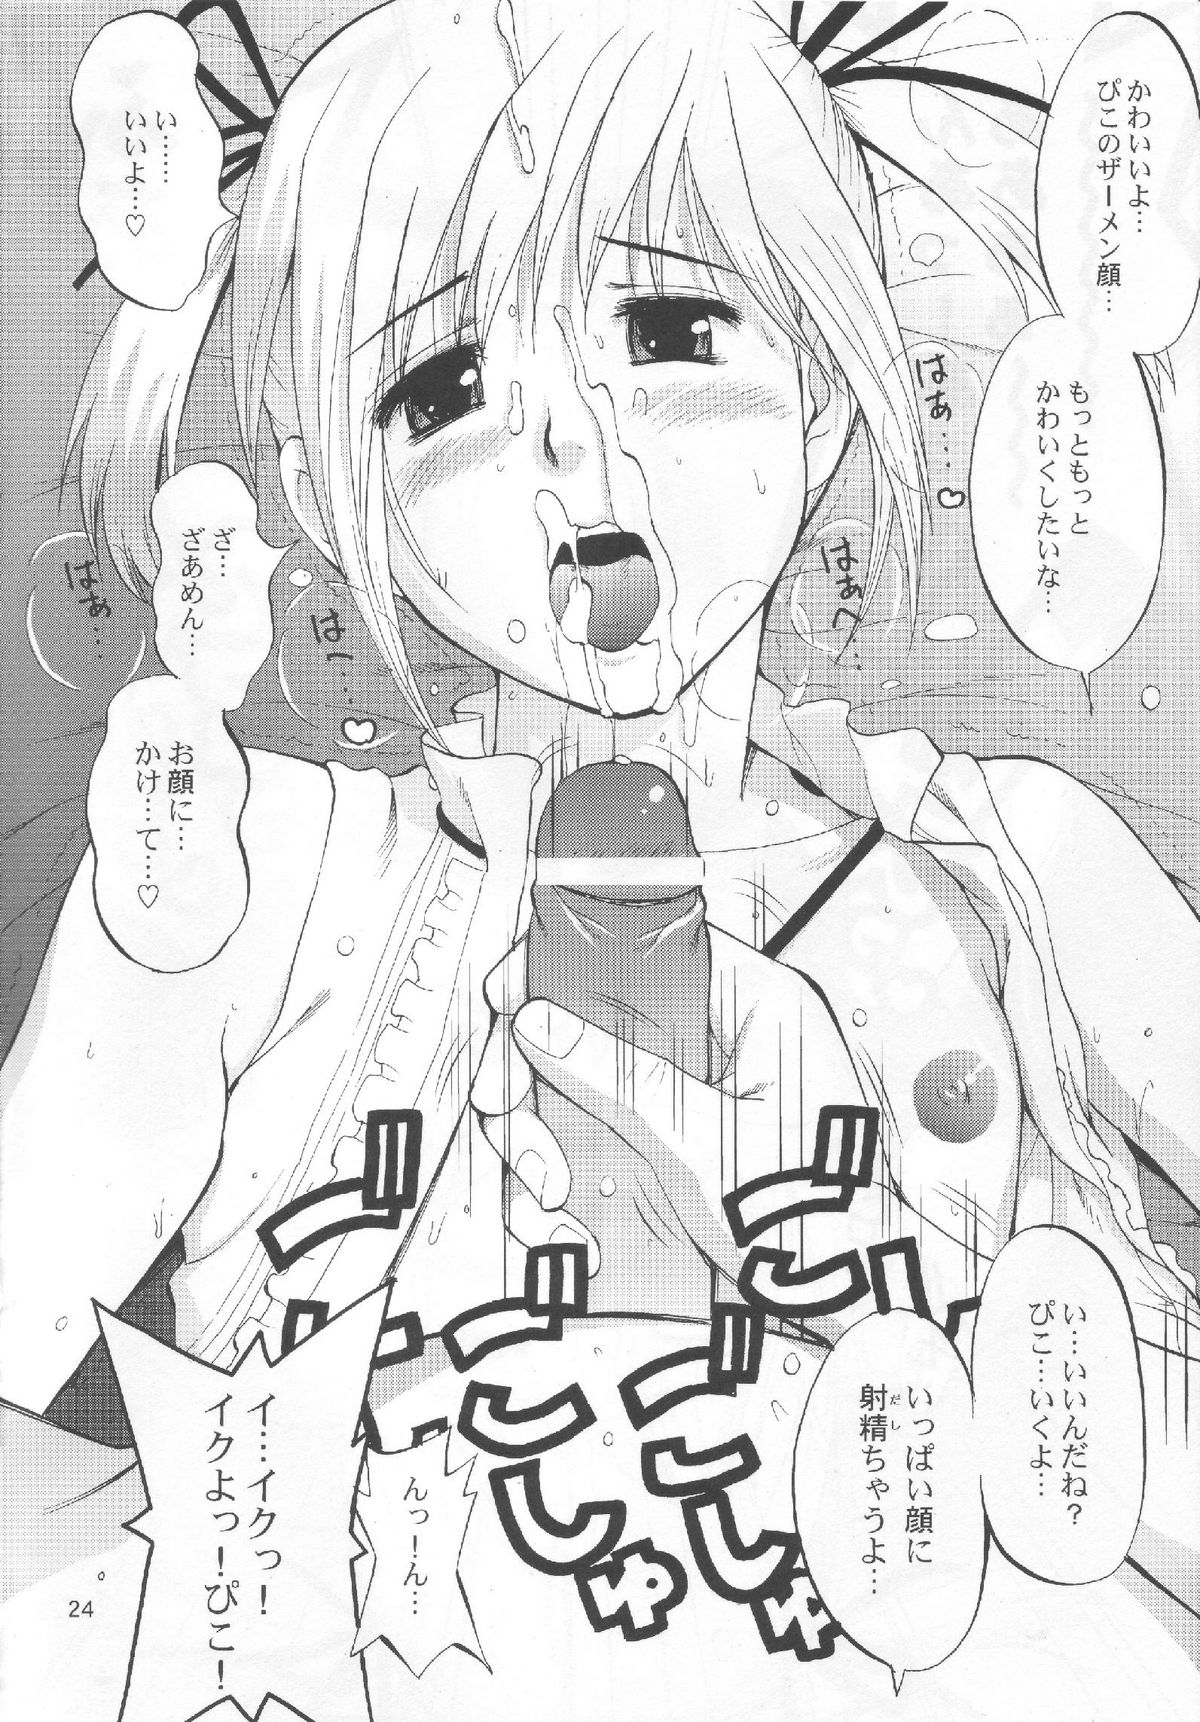 (COMIC1) [Saigado] Boku no Pico Comic + Koushiki Character Genanshuu (Boku no Pico) page 22 full